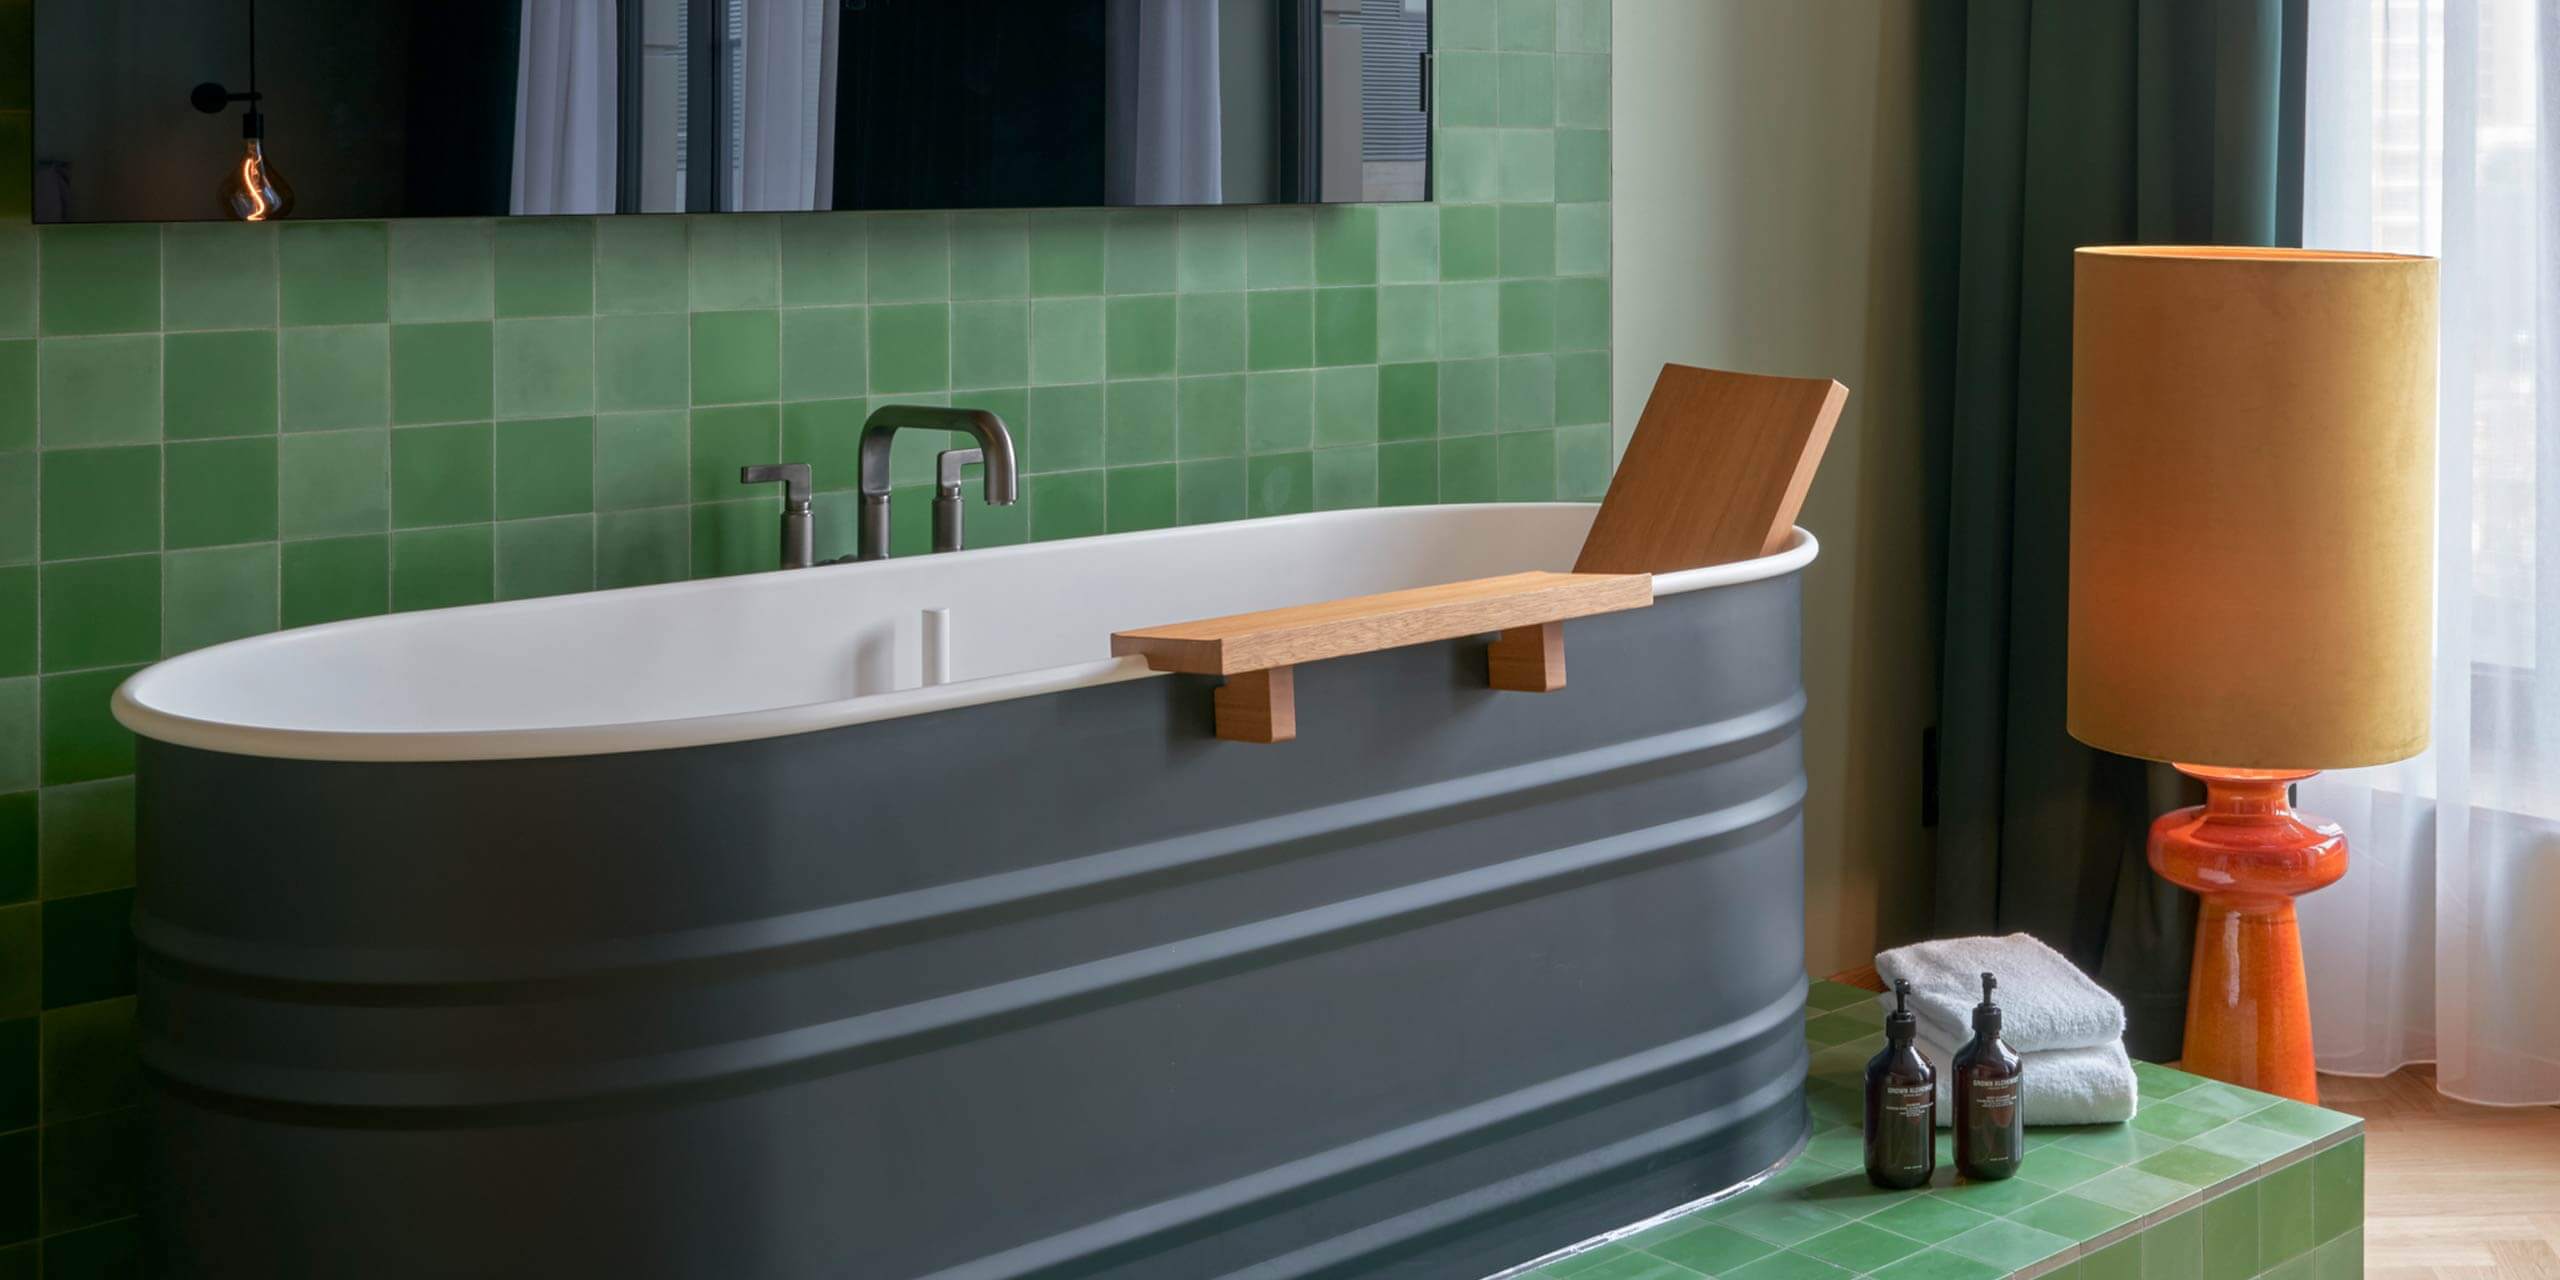 Junior Suite: grün gekachelter Badewannenbereich im Raum unter dem Fernseher